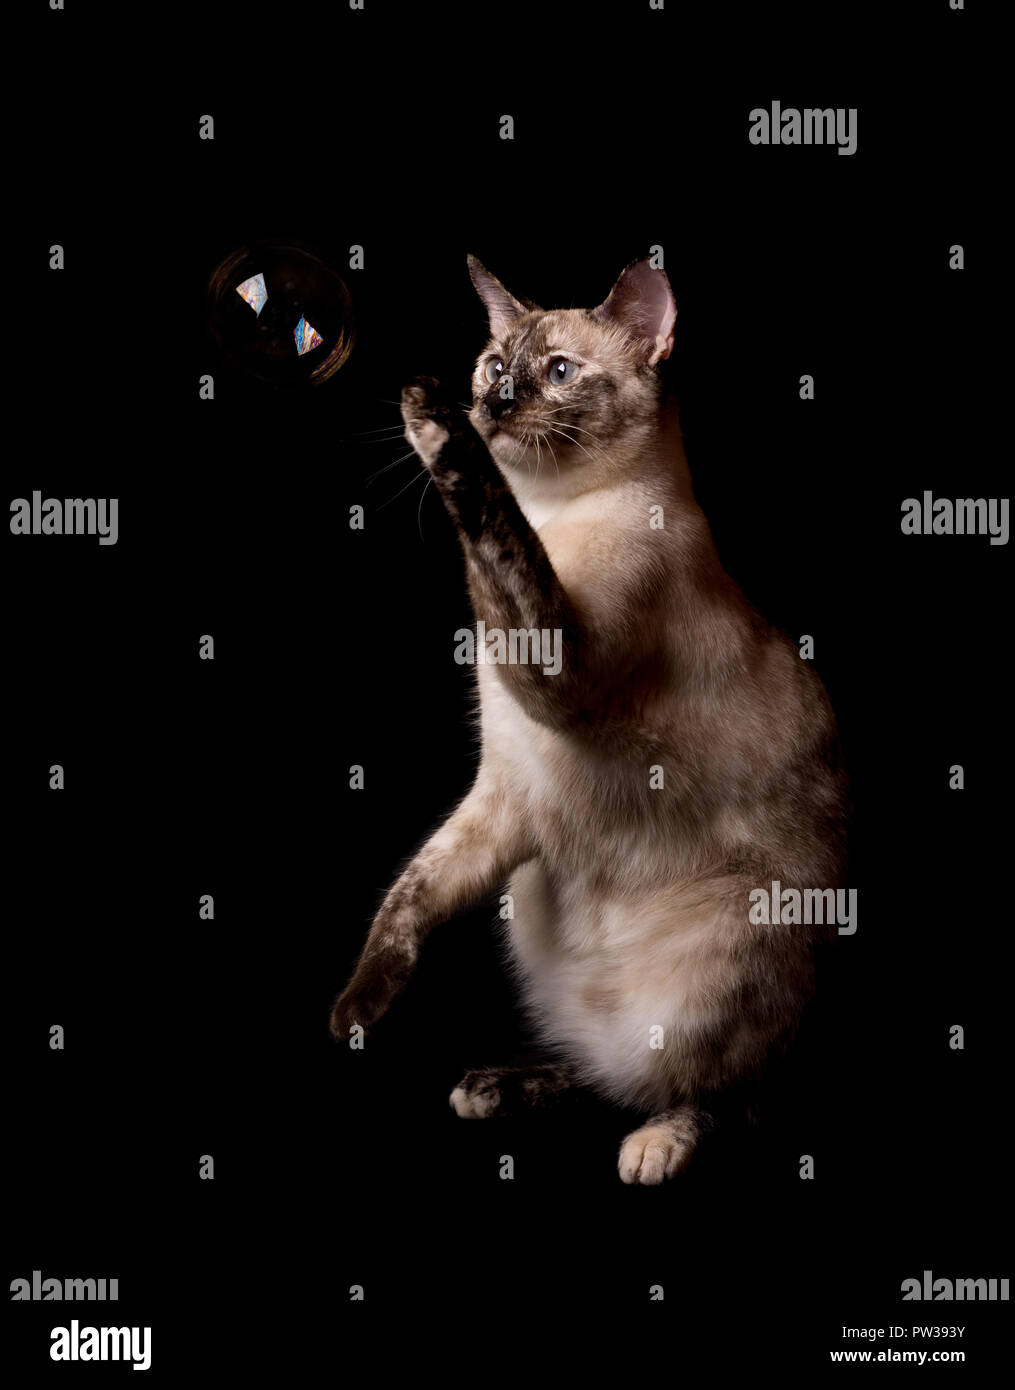 Punto Tortie gatto siamese gatto swatting in una bolla galleggiante nella parte anteriore della sua, su sfondo scuro Foto Stock